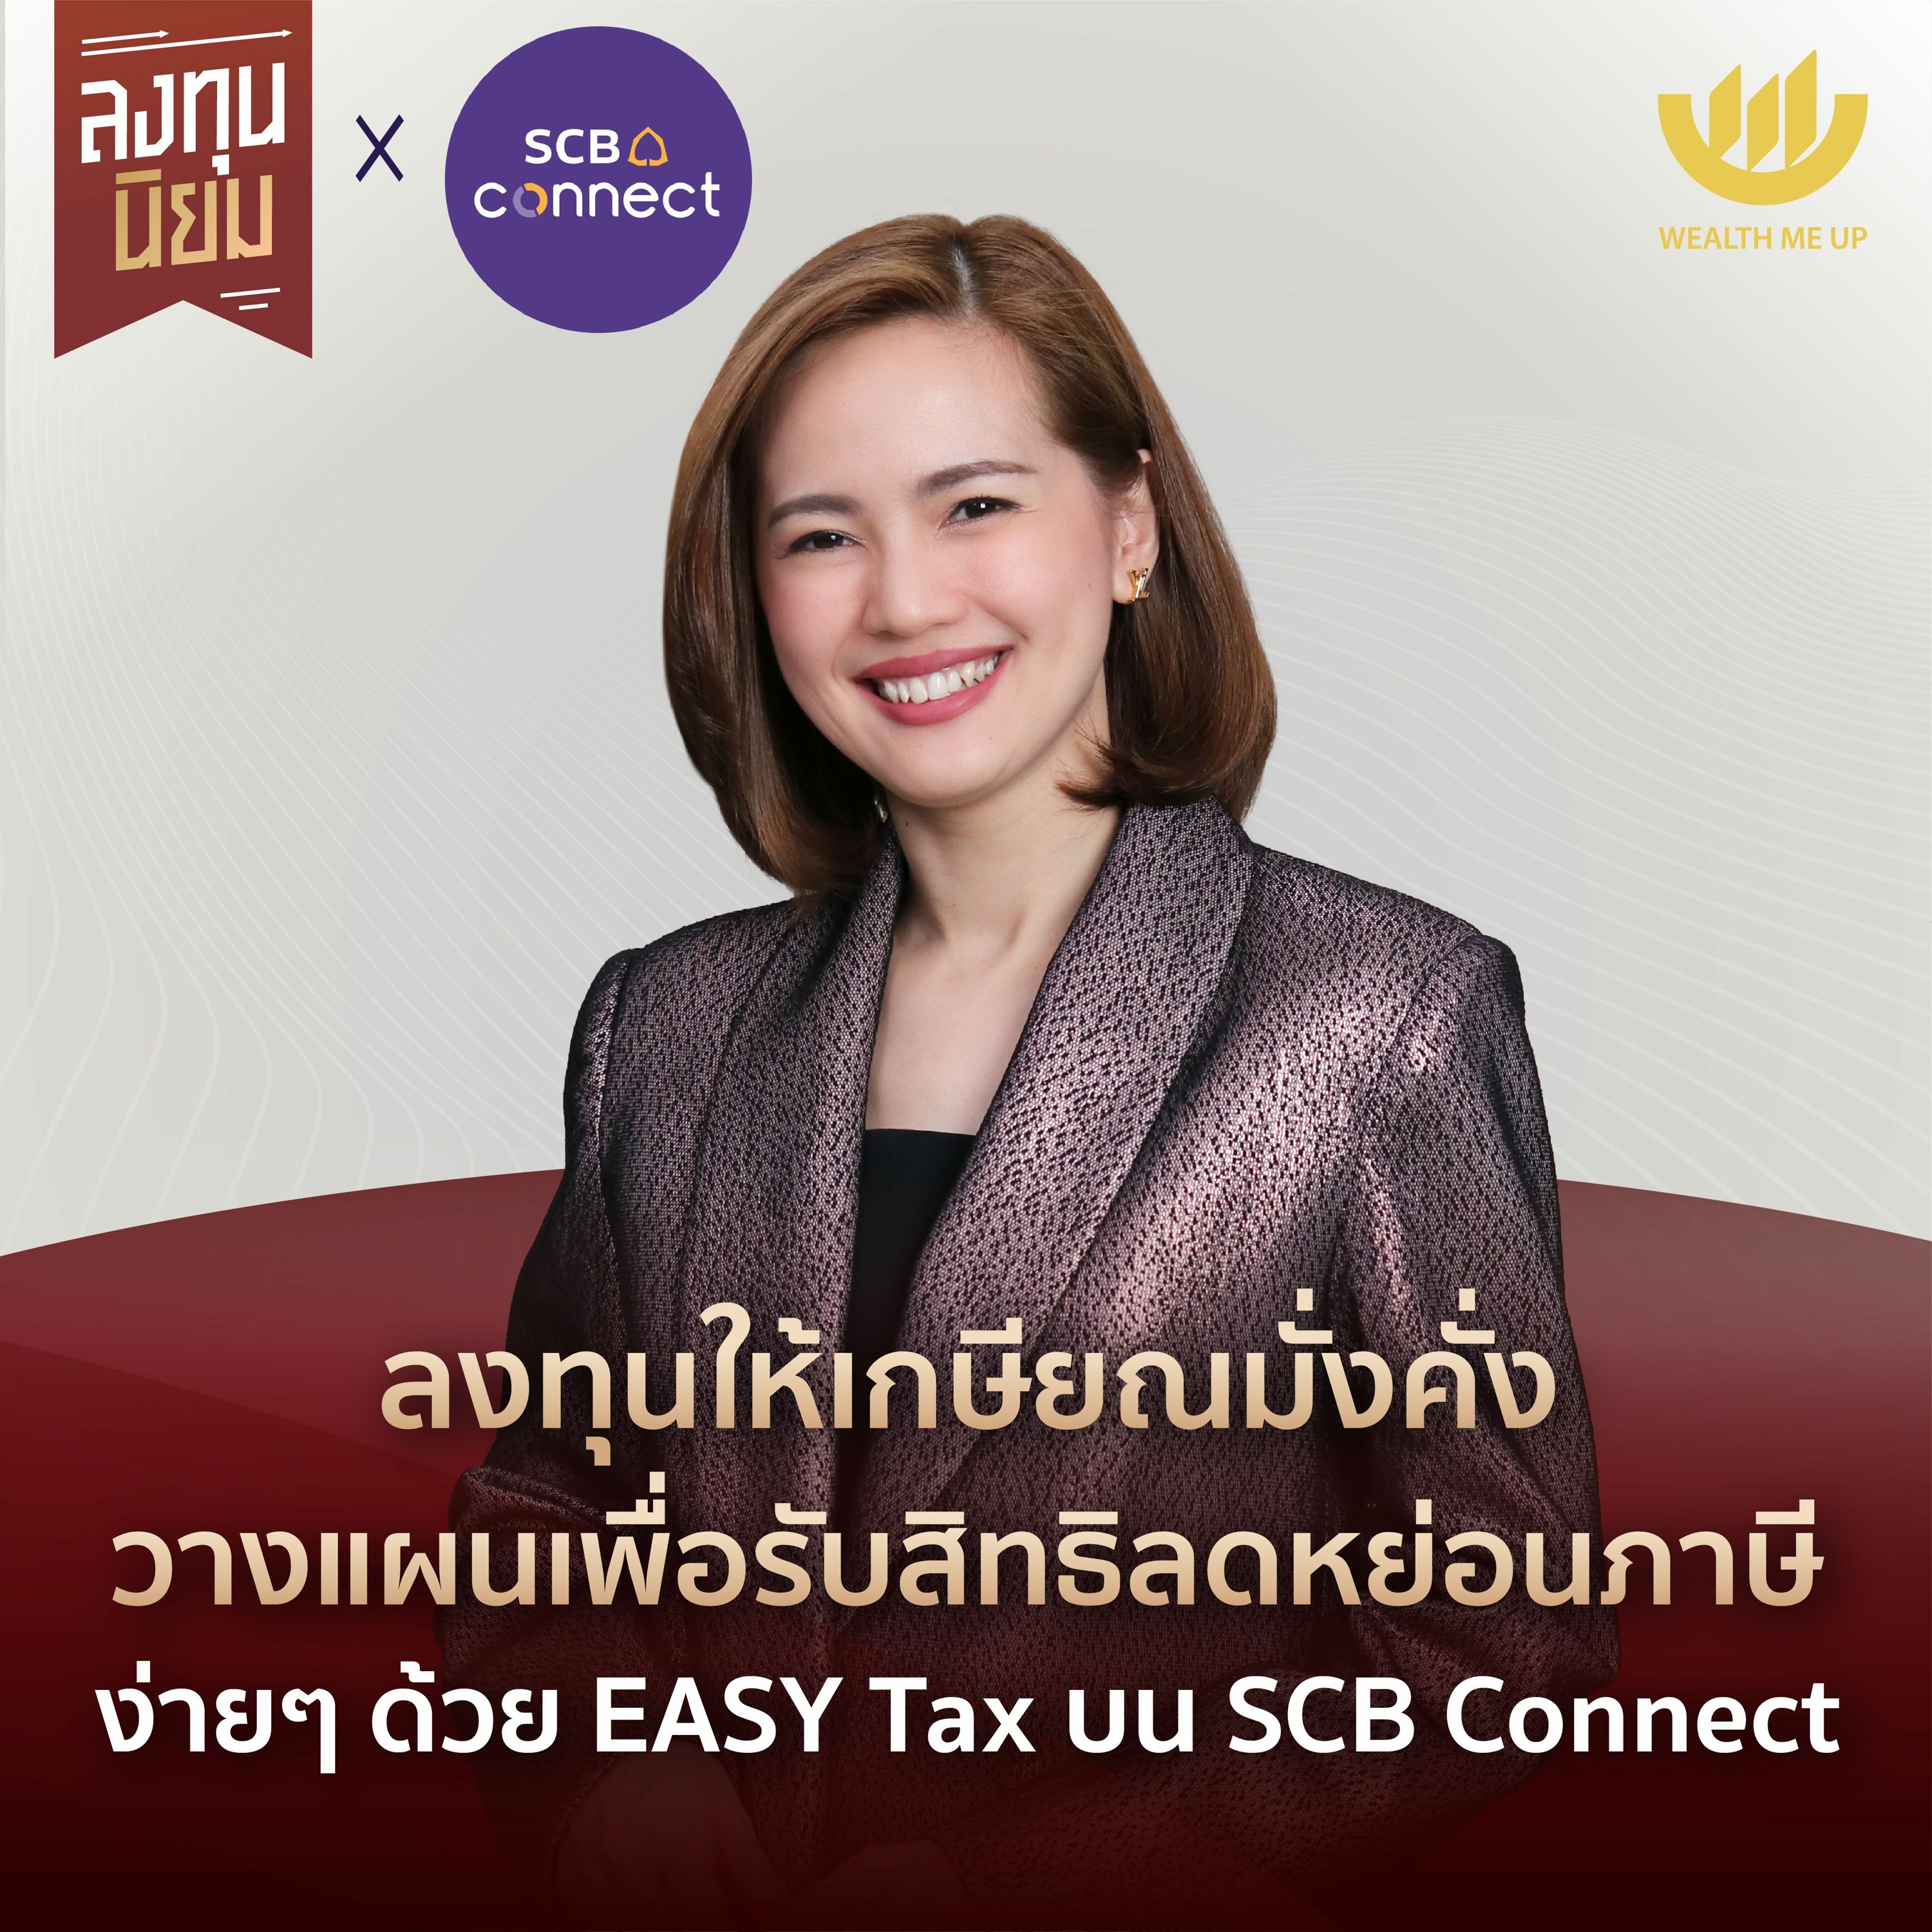 ลงทุนให้เกษียณมั่งคั่ง วางแผนรับสิทธิลดหย่อนภาษี ด้วย EASY Tax บน SCB Connect | ลงทุ�